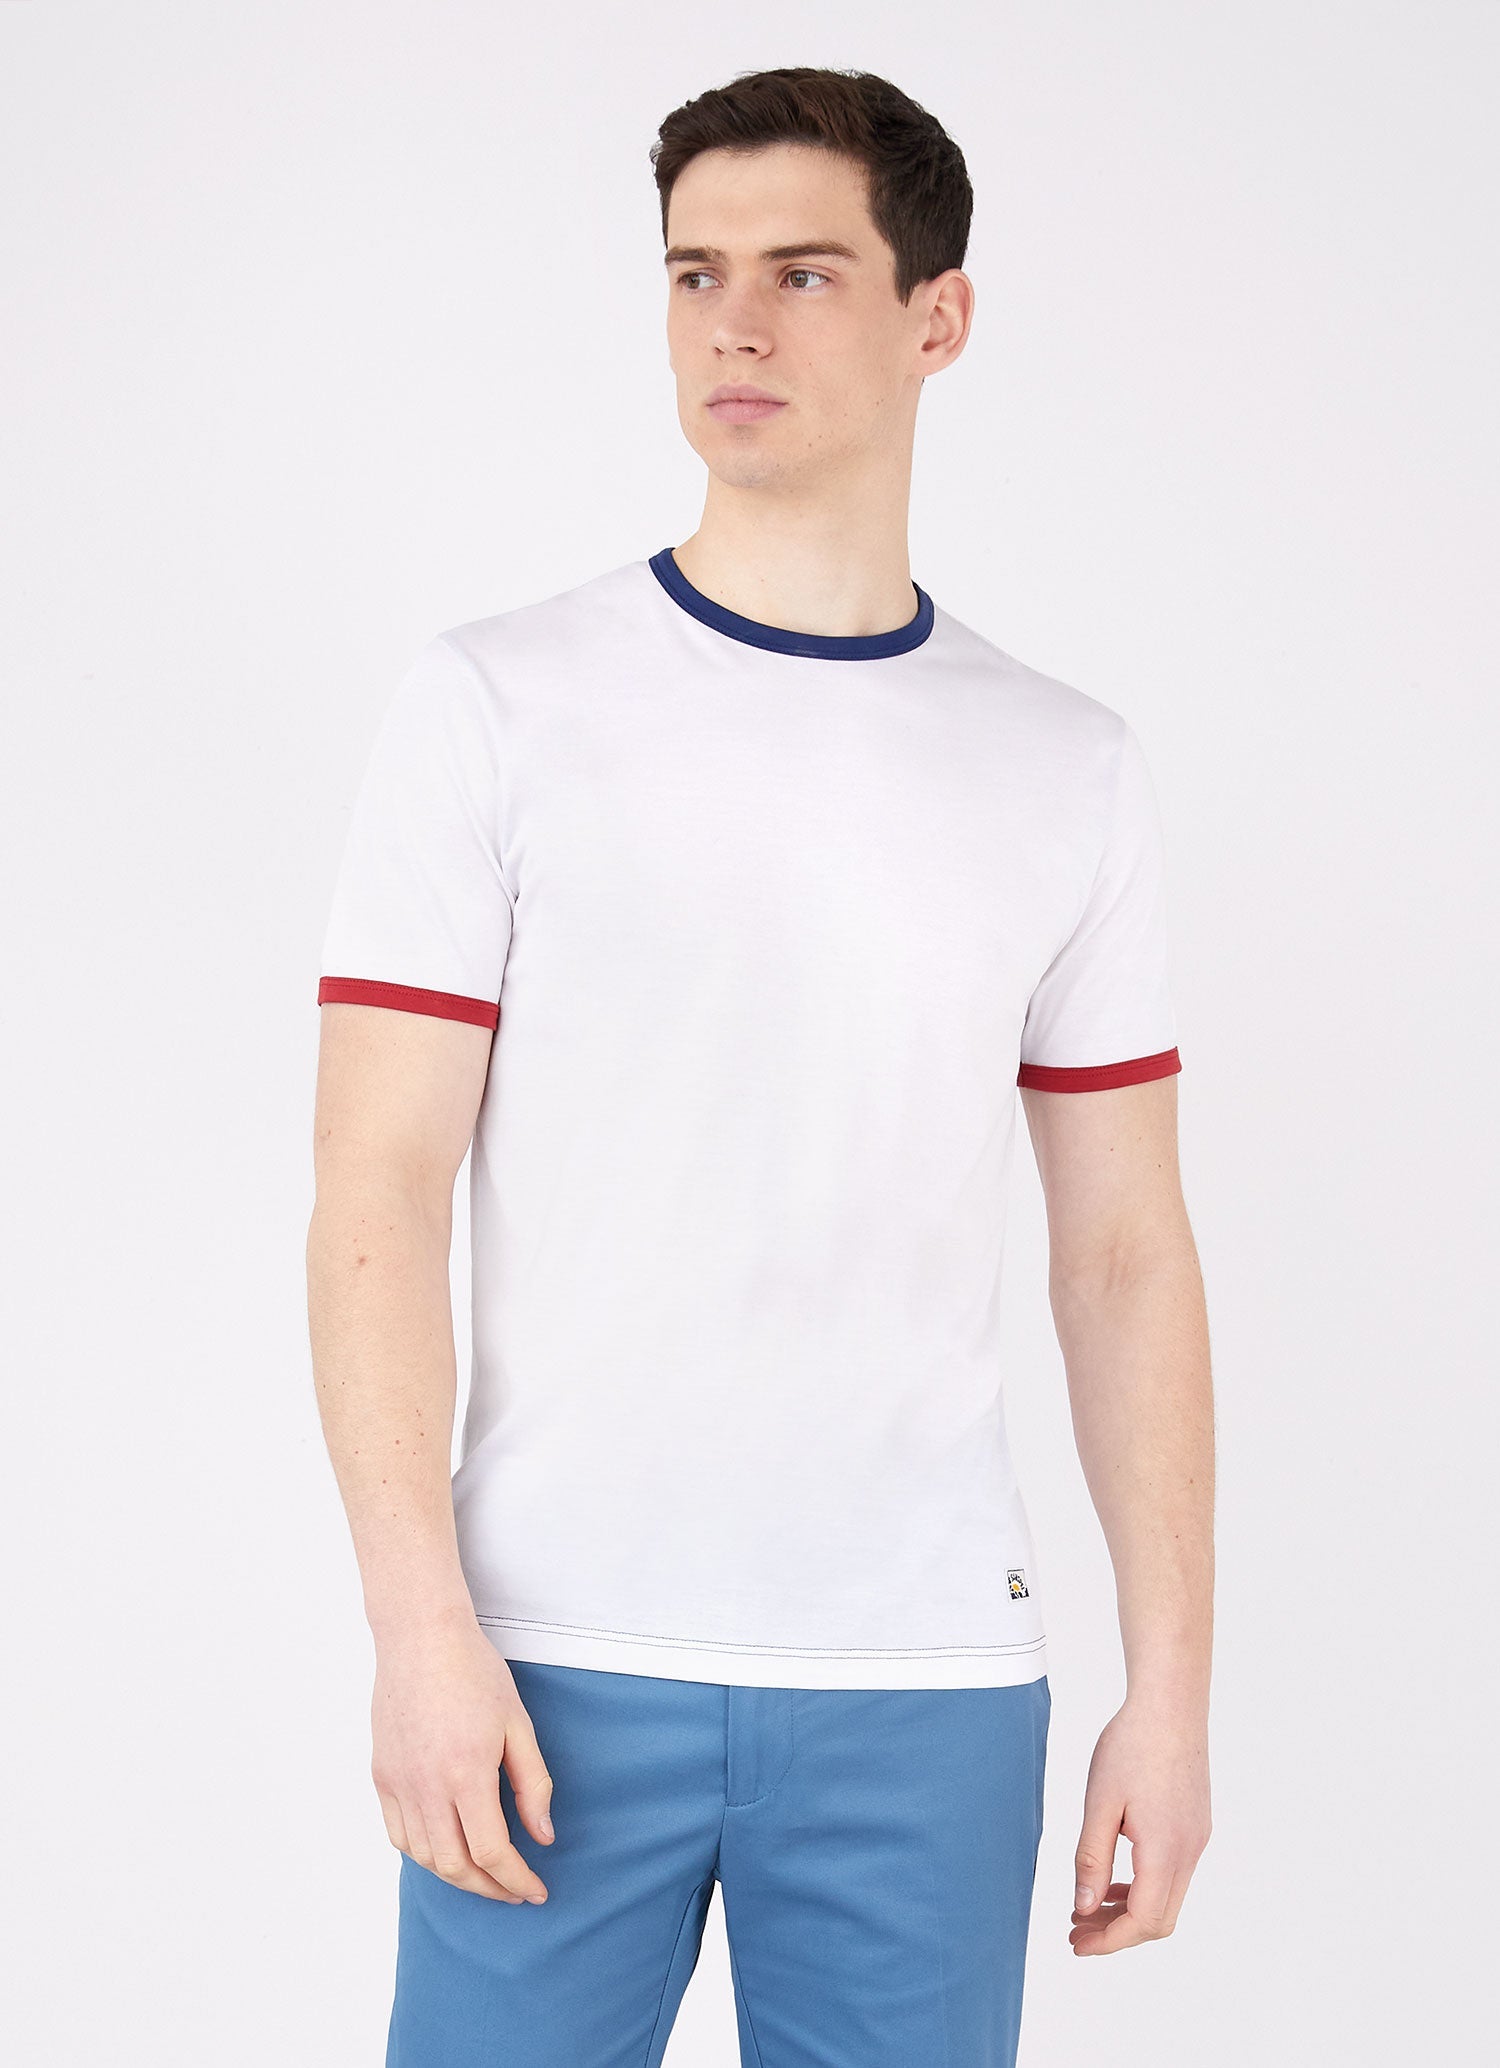 Men's Paul Weller T-shirt in White